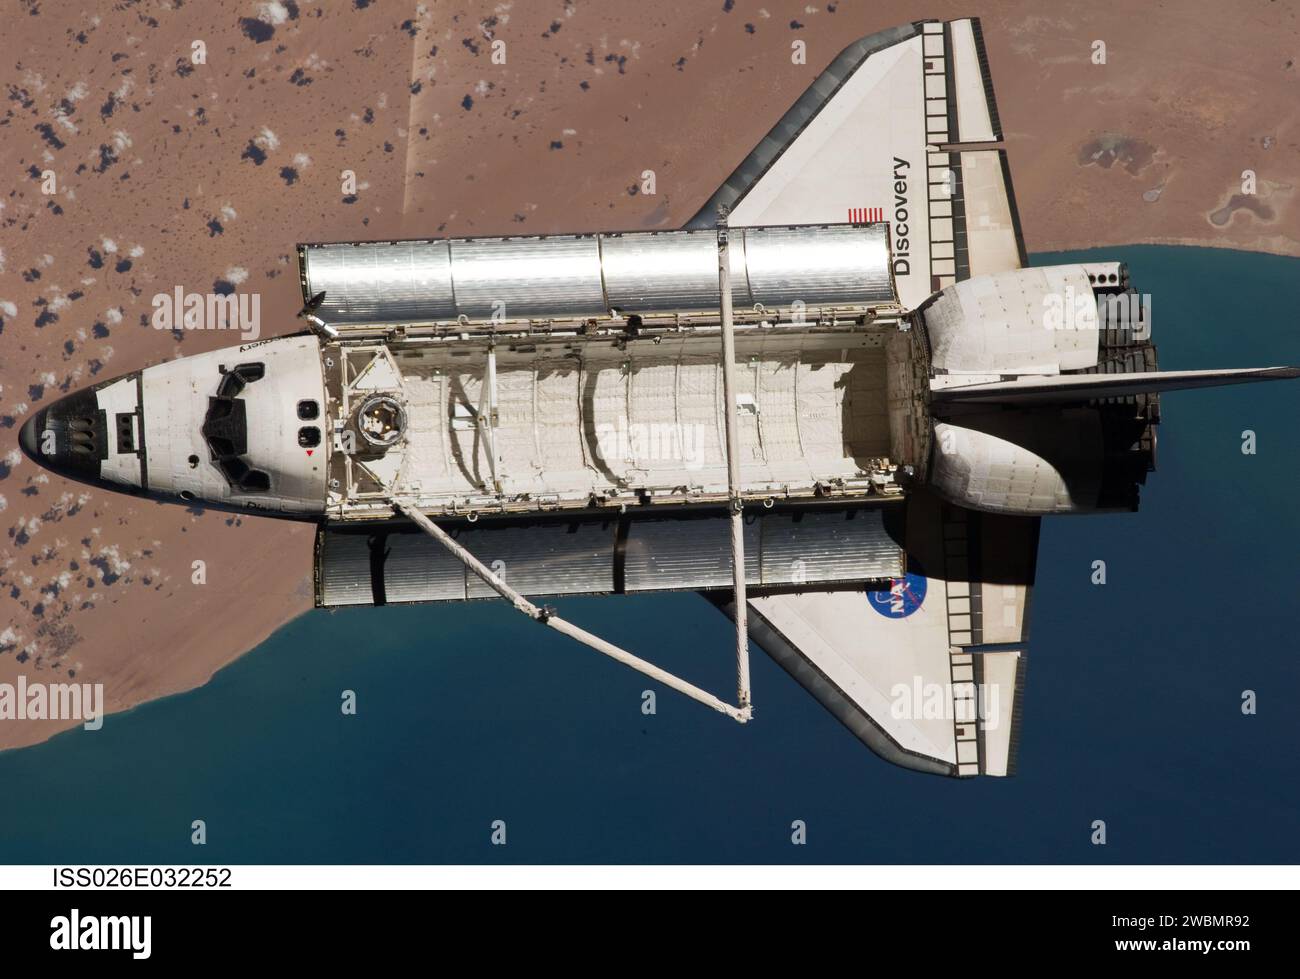 ISS026-E-032252 (7. März 2011) --- das Space Shuttle Discovery wird von der Internationalen Raumstation aus gesehen, als die beiden Raumsonden ihre relative Trennung am 7. März vollzogen haben, nachdem zwölf Astronauten und Kosmonauten über eine Woche lang zusammengearbeitet haben. Das Gebiet darunter ist die südwestliche Küste Marokkos im Nordatlantik. Während eines Posts, der den Flug abdockte, sammelten die Besatzungsmitglieder an Bord der beiden Raumfahrzeuge eine Reihe von Fotos des jeweils anderen Fahrzeugs. Stockfoto